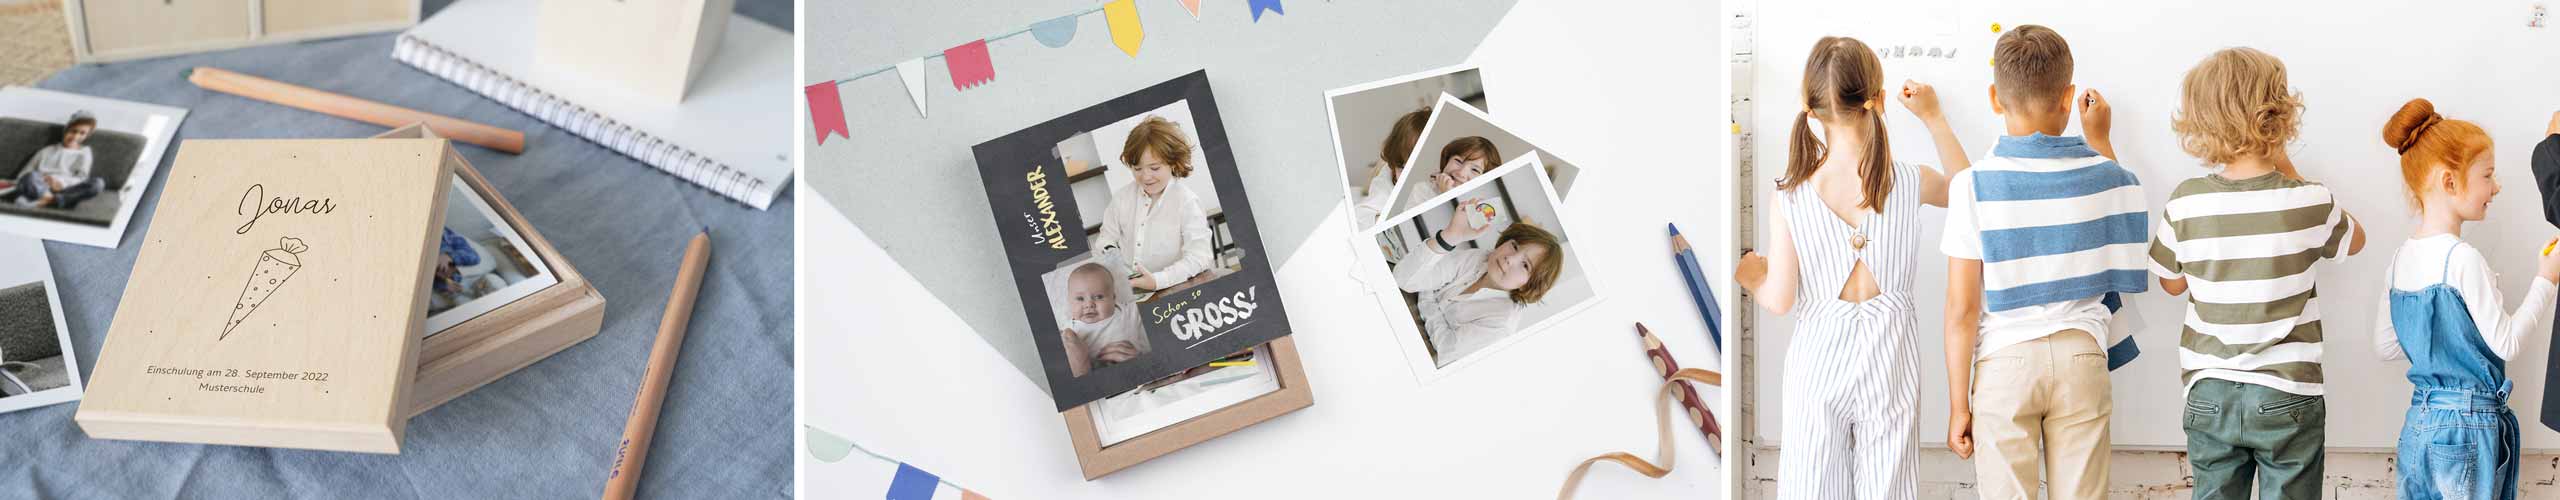 Personalisierte Bilderboxen für Kinder zum Schulanfang mit eigenen Namen und Fotos